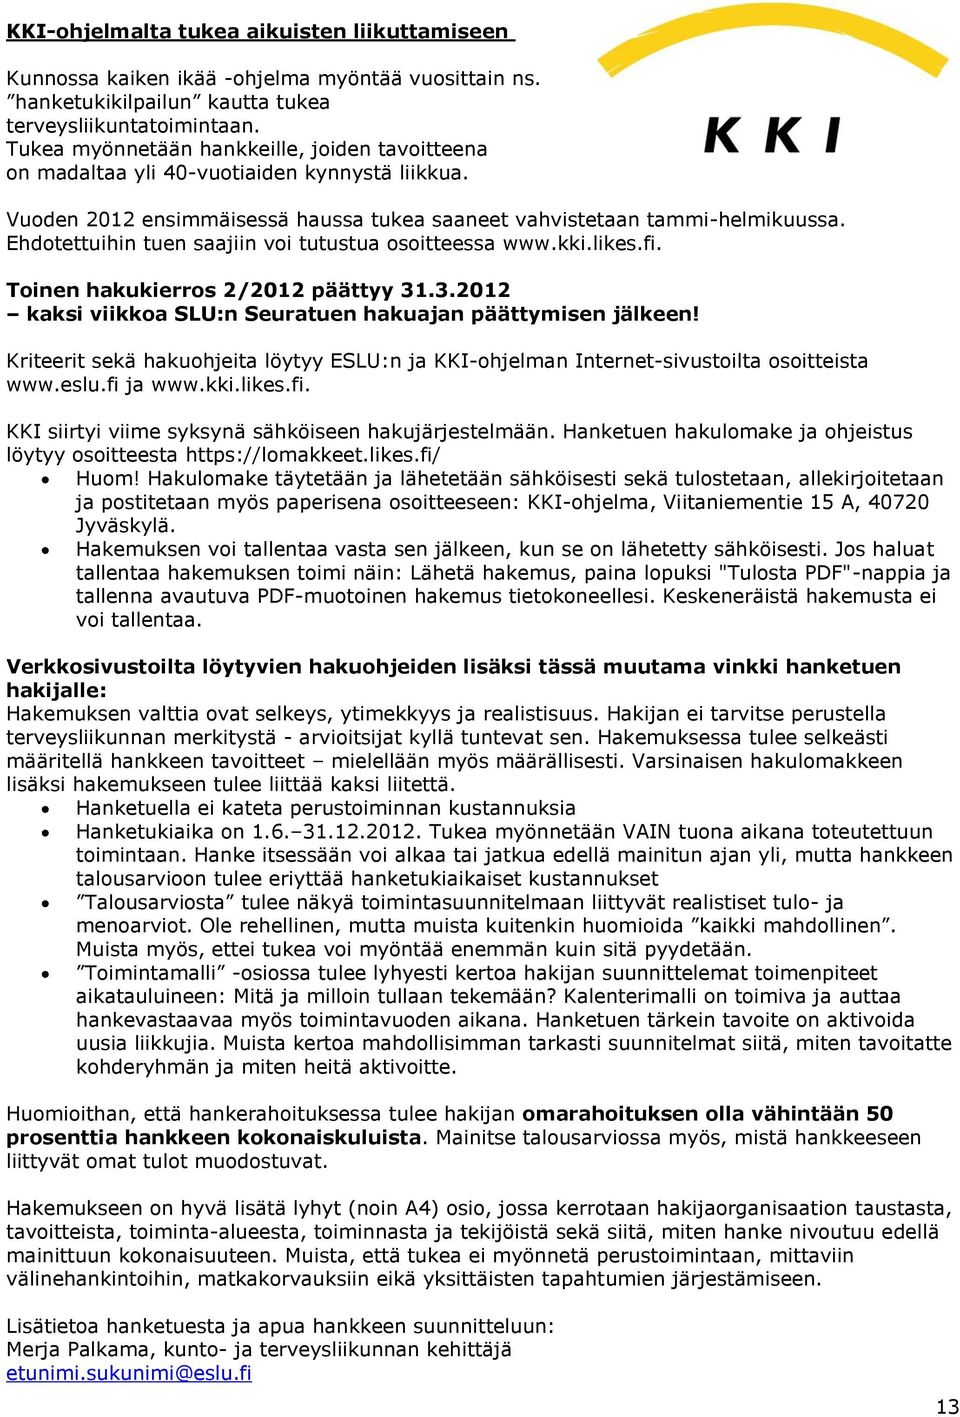 Ehdotettuihin tuen saajiin voi tutustua osoitteessa www.kki.likes.fi. Toinen hakukierros 2/2012 päättyy 31.3.2012 kaksi viikkoa SLU:n Seuratuen hakuajan päättymisen jälkeen!